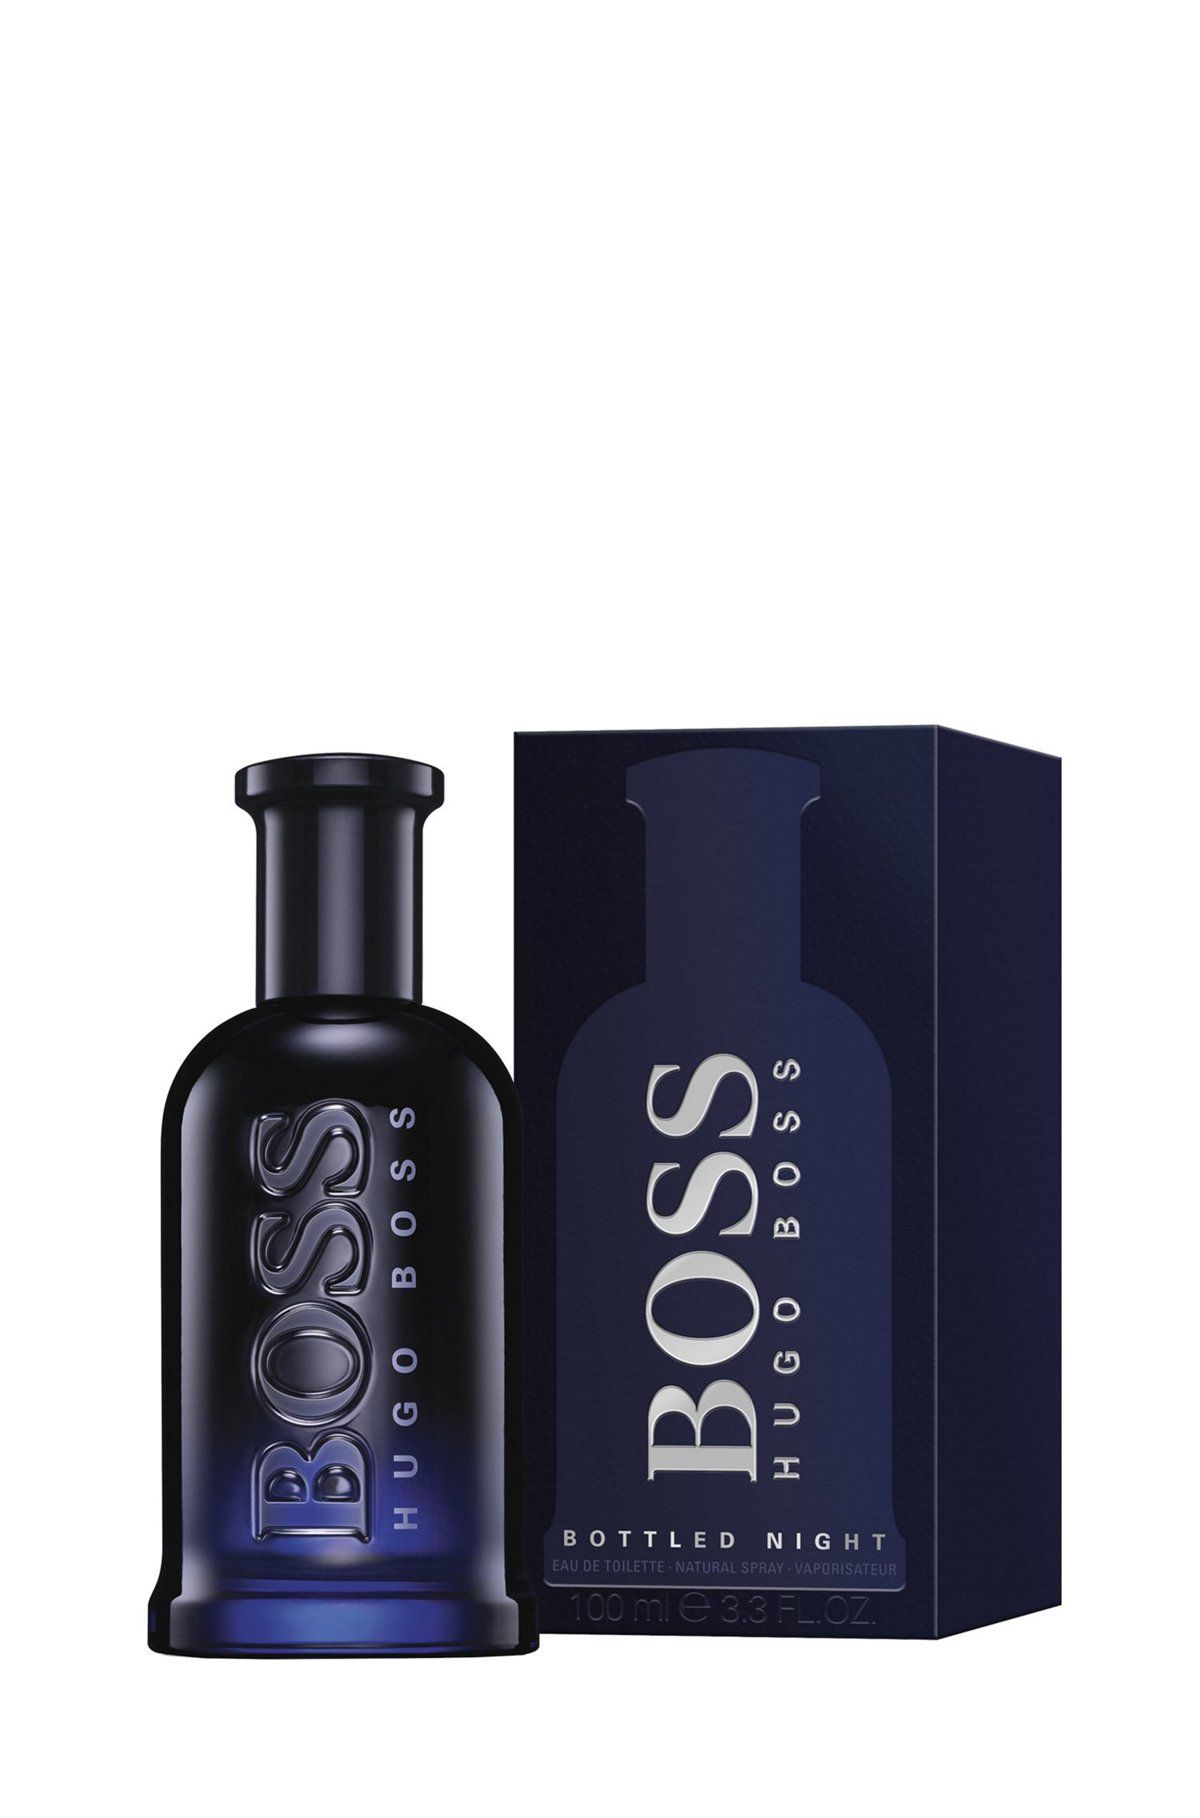 Hugo Boss Bottled Night 100 ml. Hugo Boss Bottled Night. EDT. 100 Ml. Hugo Boss Boss Bottled Night Eau de Toilette. Hugo Boss - Bottled Night 100мл. Хьюго босс летуаль